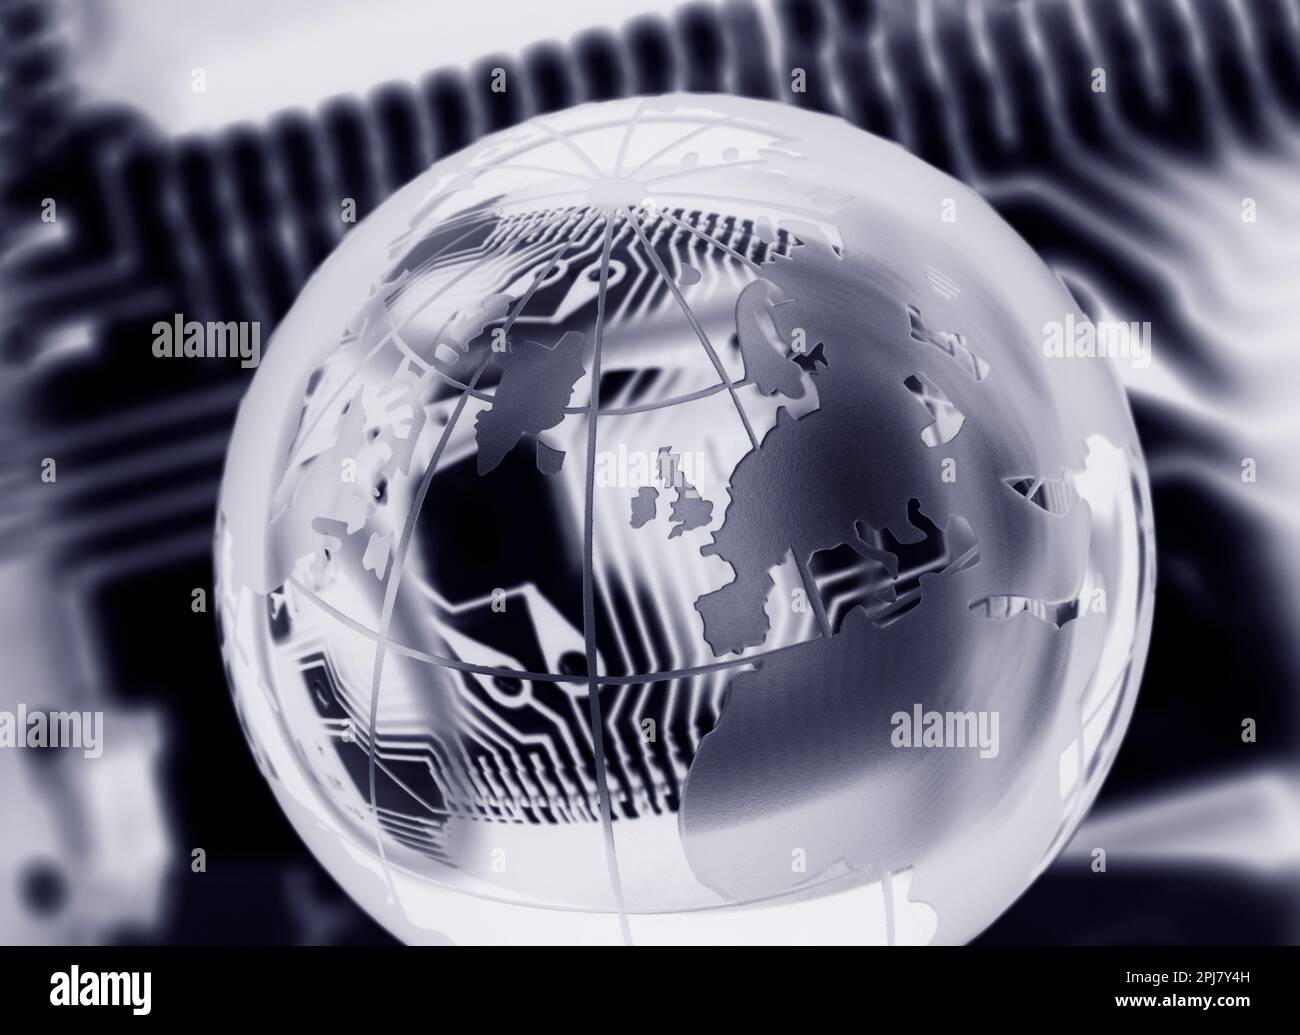 Industrie technologique mondiale, image conceptuelle Banque D'Images